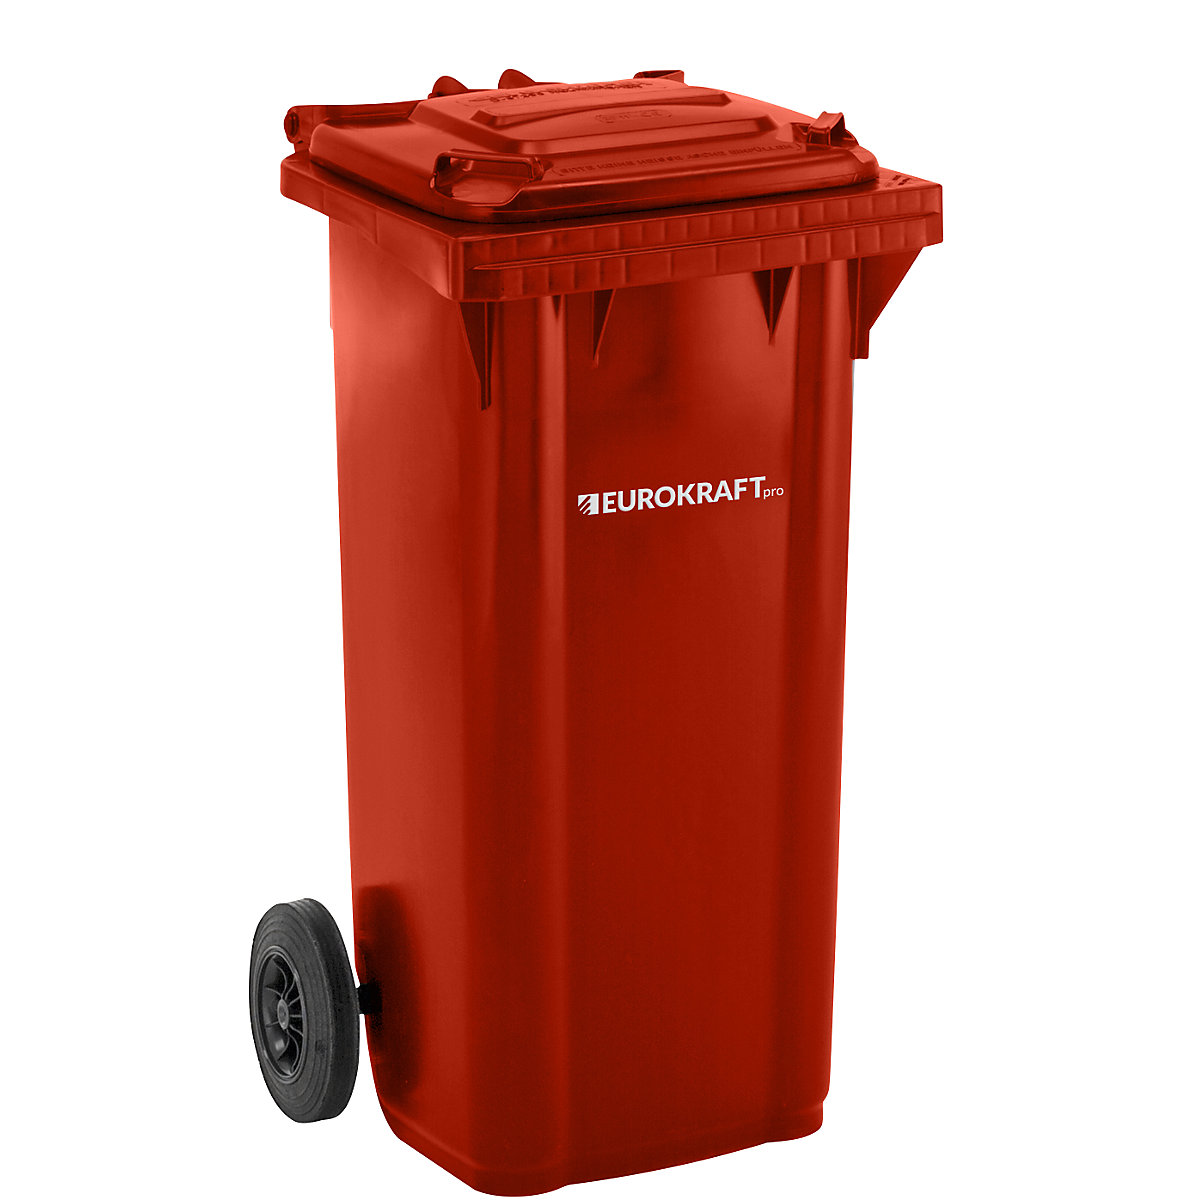 Kanta za smeće od plastike DIN EN 840 – eurokraft pro, volumen 120 l, ŠxVxD 505 x 1005 x 555 mm, u crvenoj boji-4